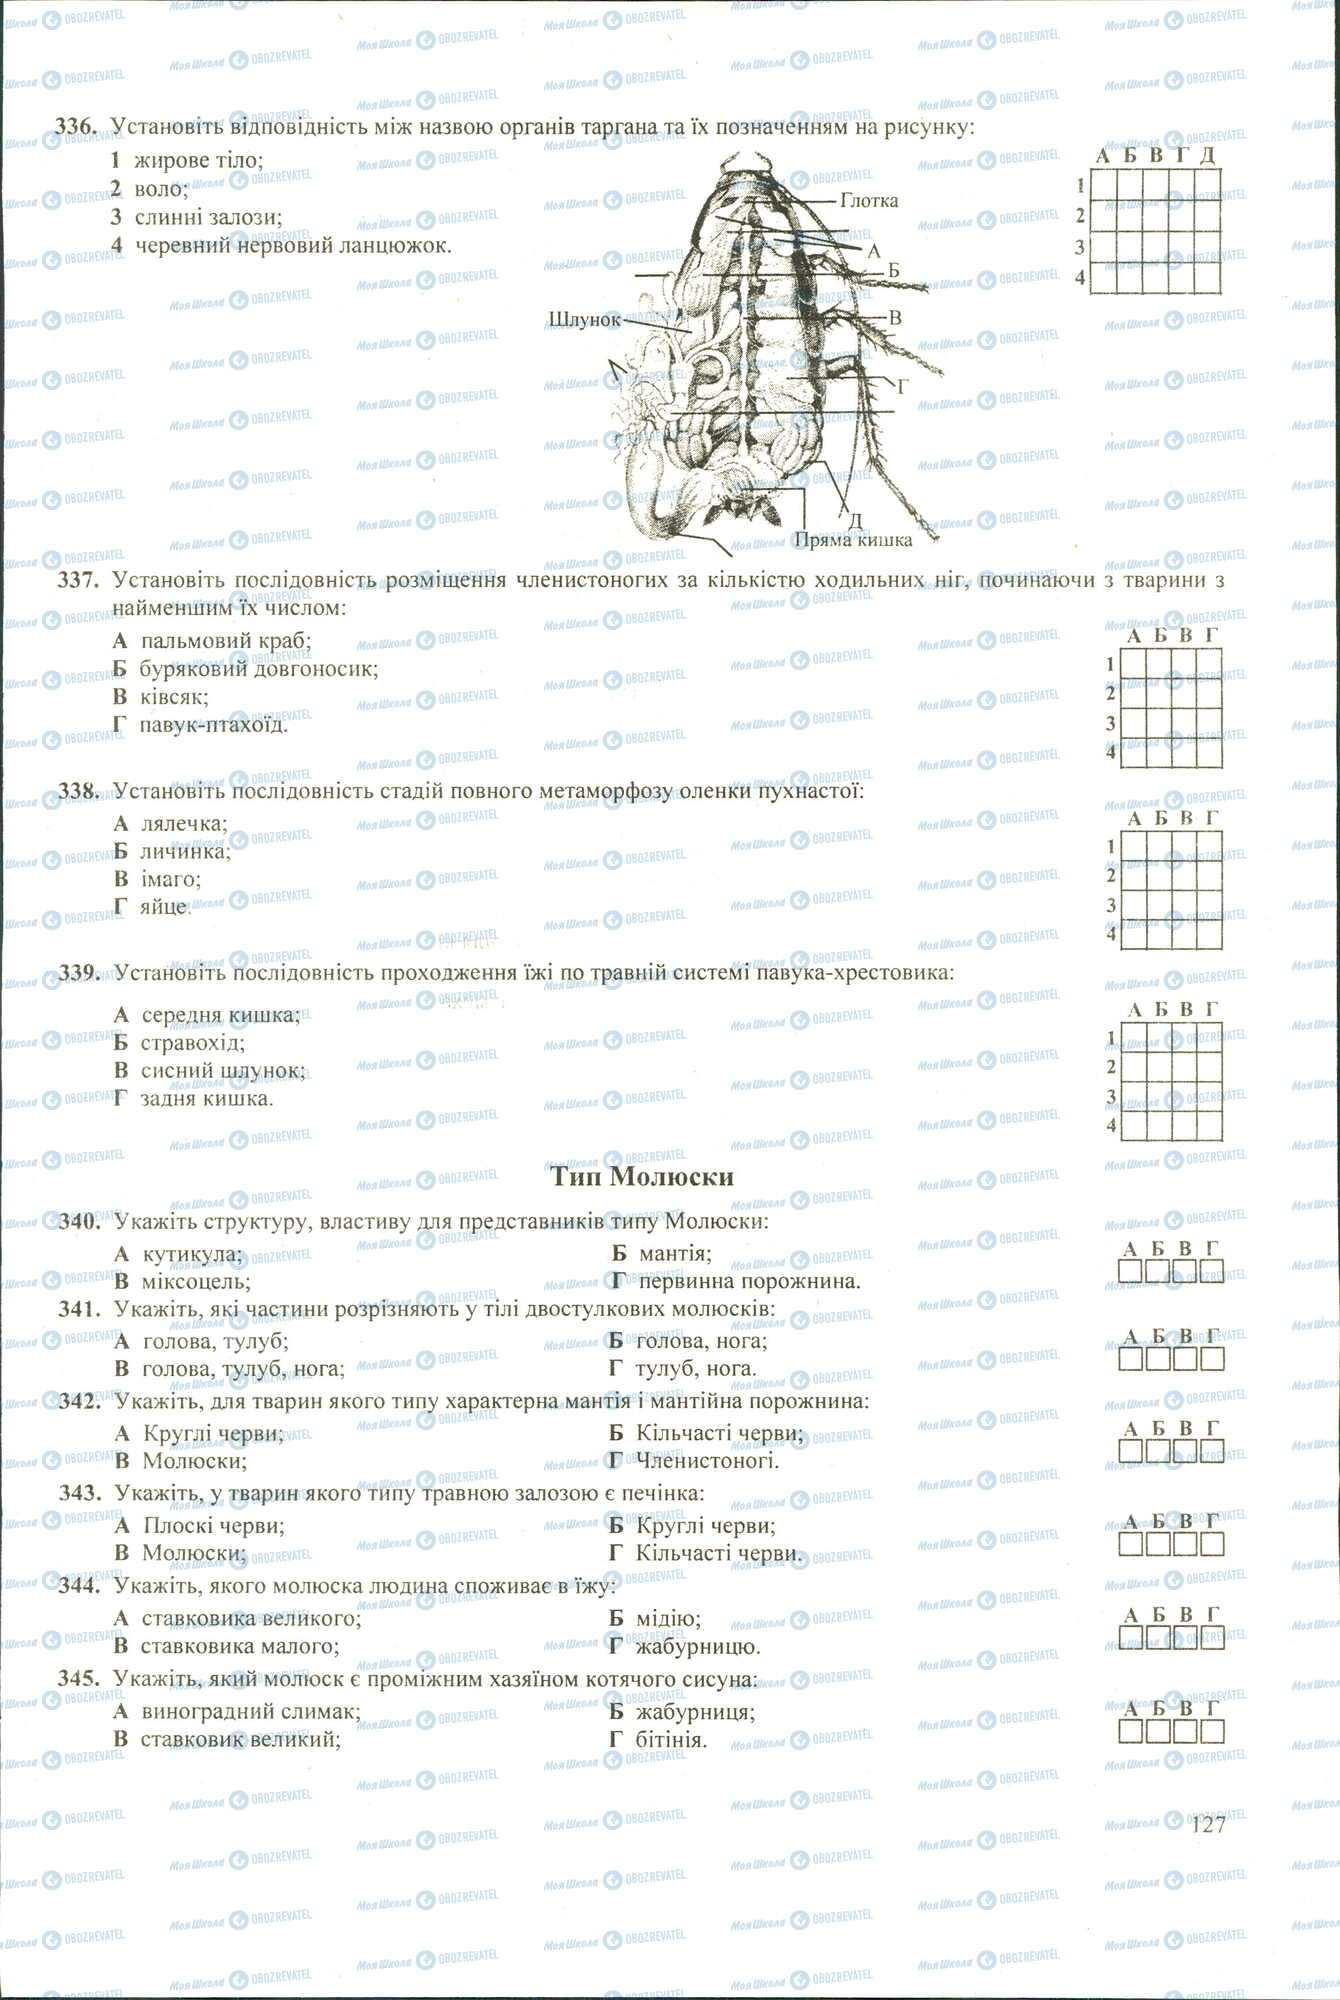 ЗНО Биология 11 класс страница 336-345